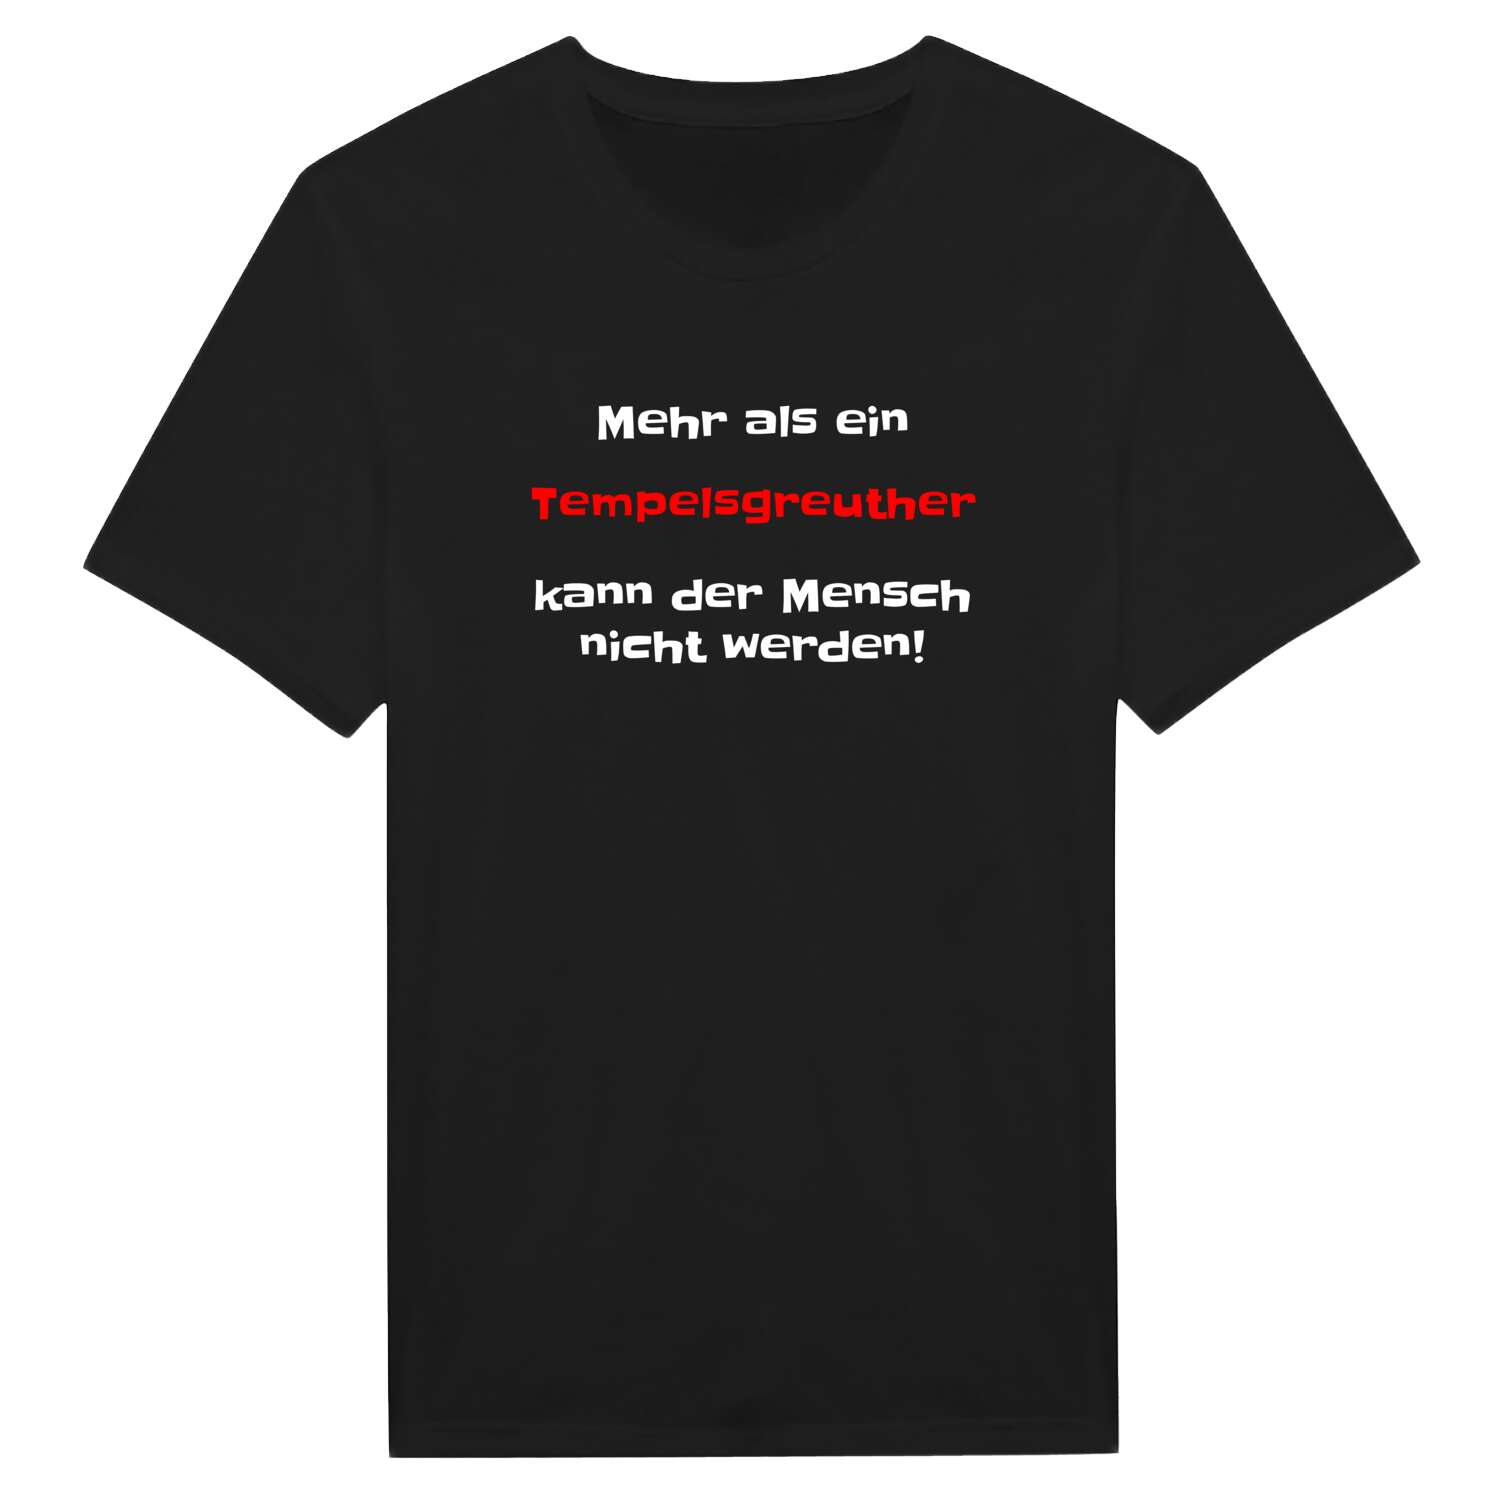 Tempelsgreuth T-Shirt »Mehr als ein«